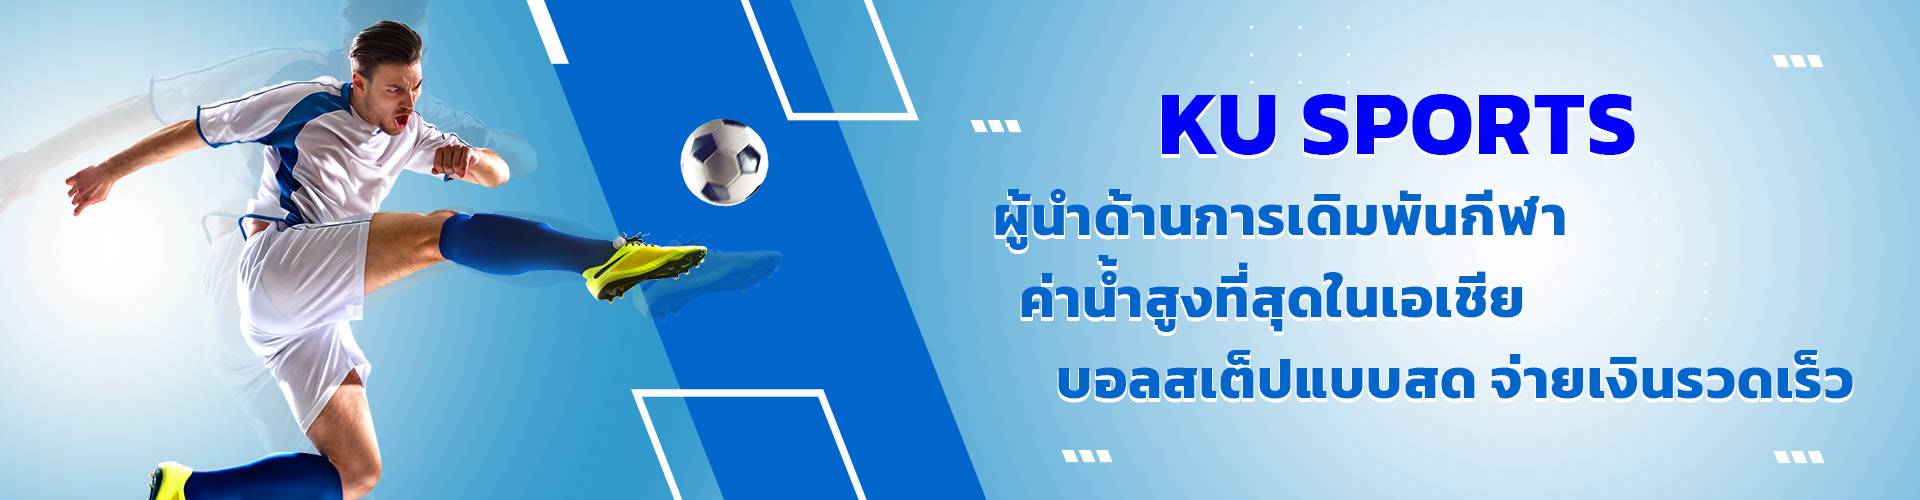 แทงบอลออนไลน์ เดิมพันกีฬา กับ KU Sports รับค่าน้ำสูงสุดในเอเชีย